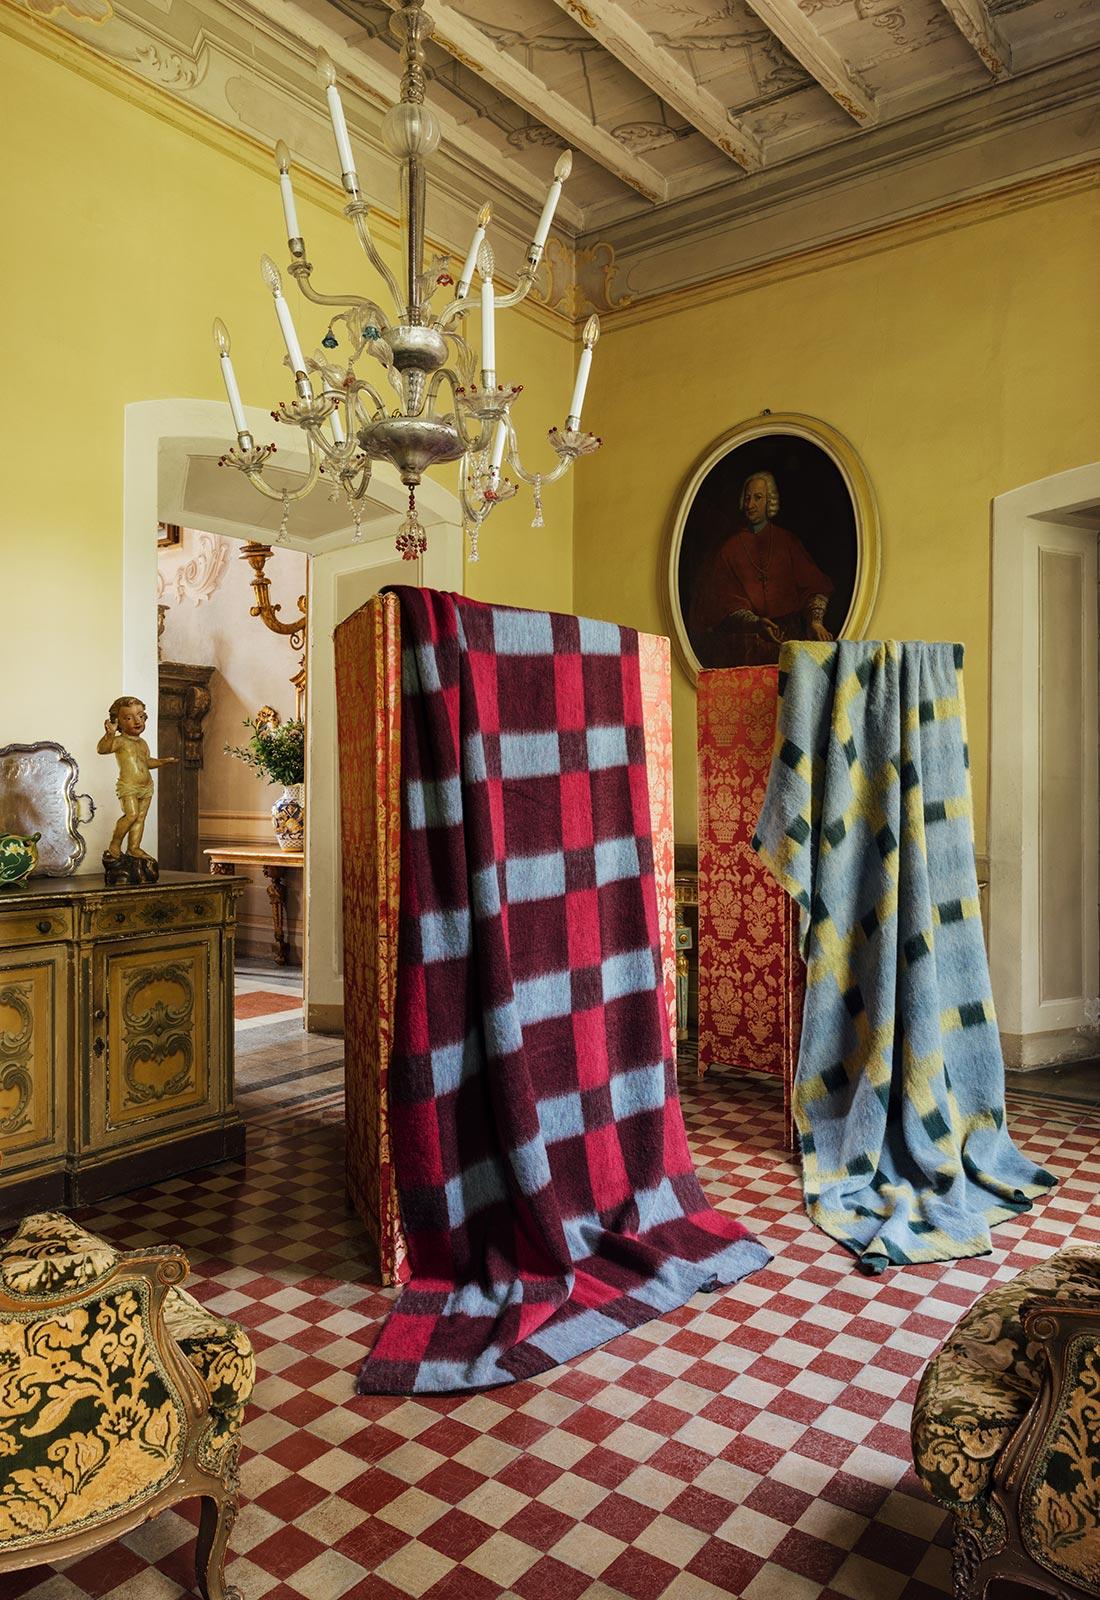 Eine exquisite jacquardgewebte Alpakadecke, in Collaboration mit der skandinavischen Künstlerin Evelina Kroon. Das unverwechselbare Karomuster von Evelina ziert jetzt eine großzügig bemessene Decke. Diese übergroße Decke eignet sich sowohl als